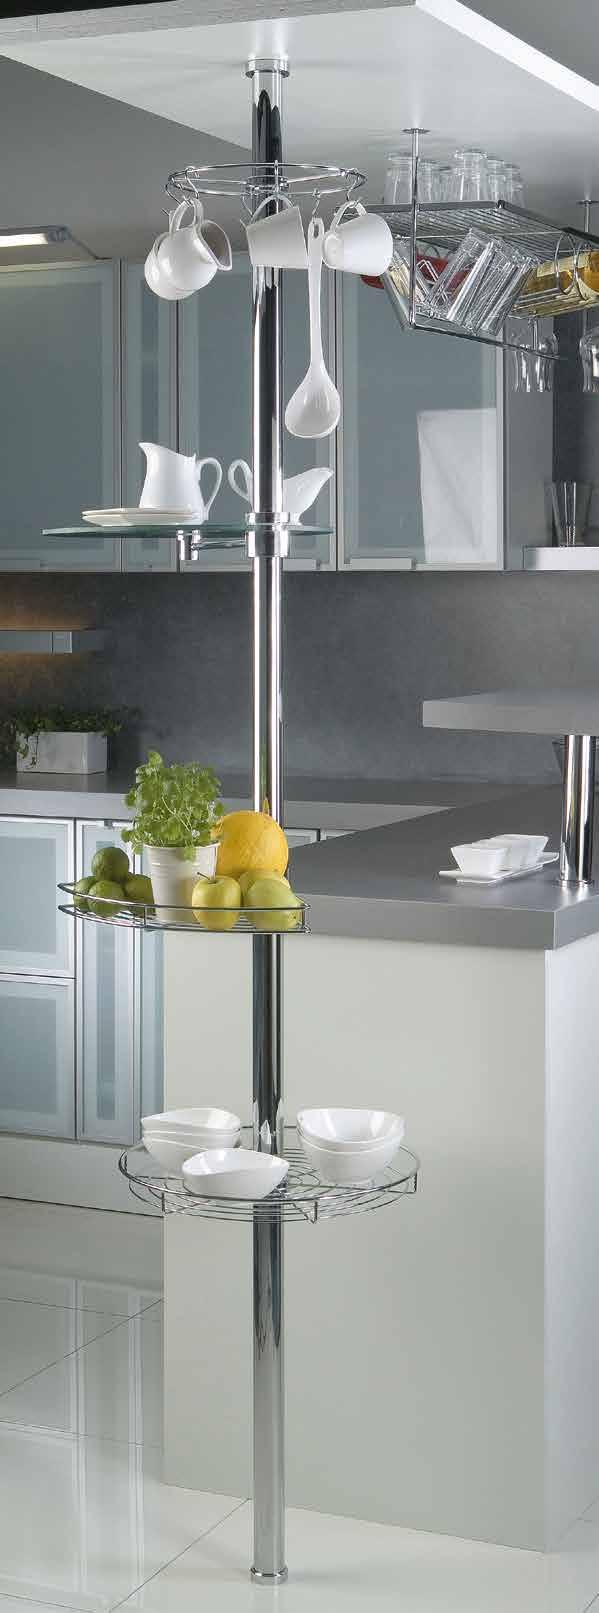 MULTIFUNKČNÍ SLOUP Multifunkční sloup umožňuje kreativní a funkční zařízení kuchyně a obývacího pokoje pomocí ocelových sloupů v kombinaci s praktickými držáky a poličkami.